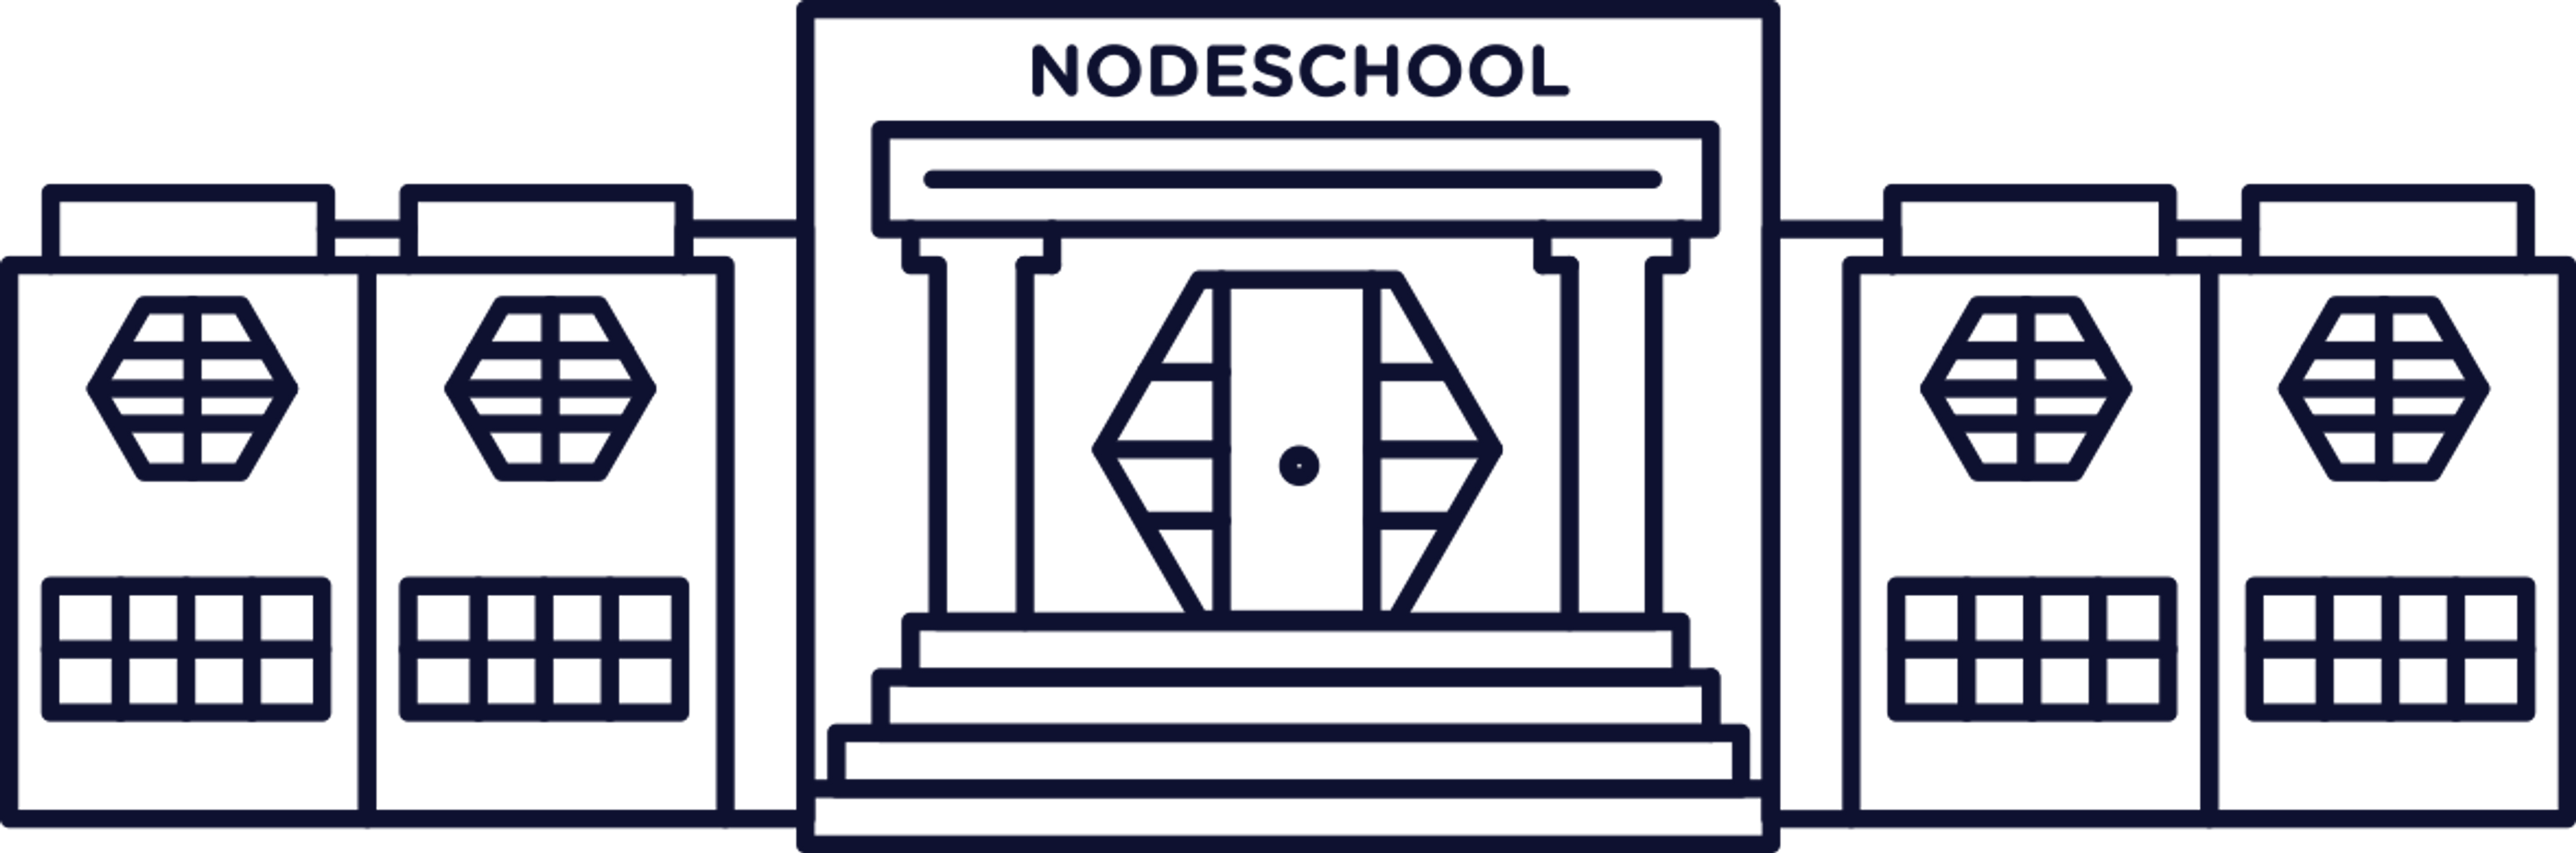 nodeschool